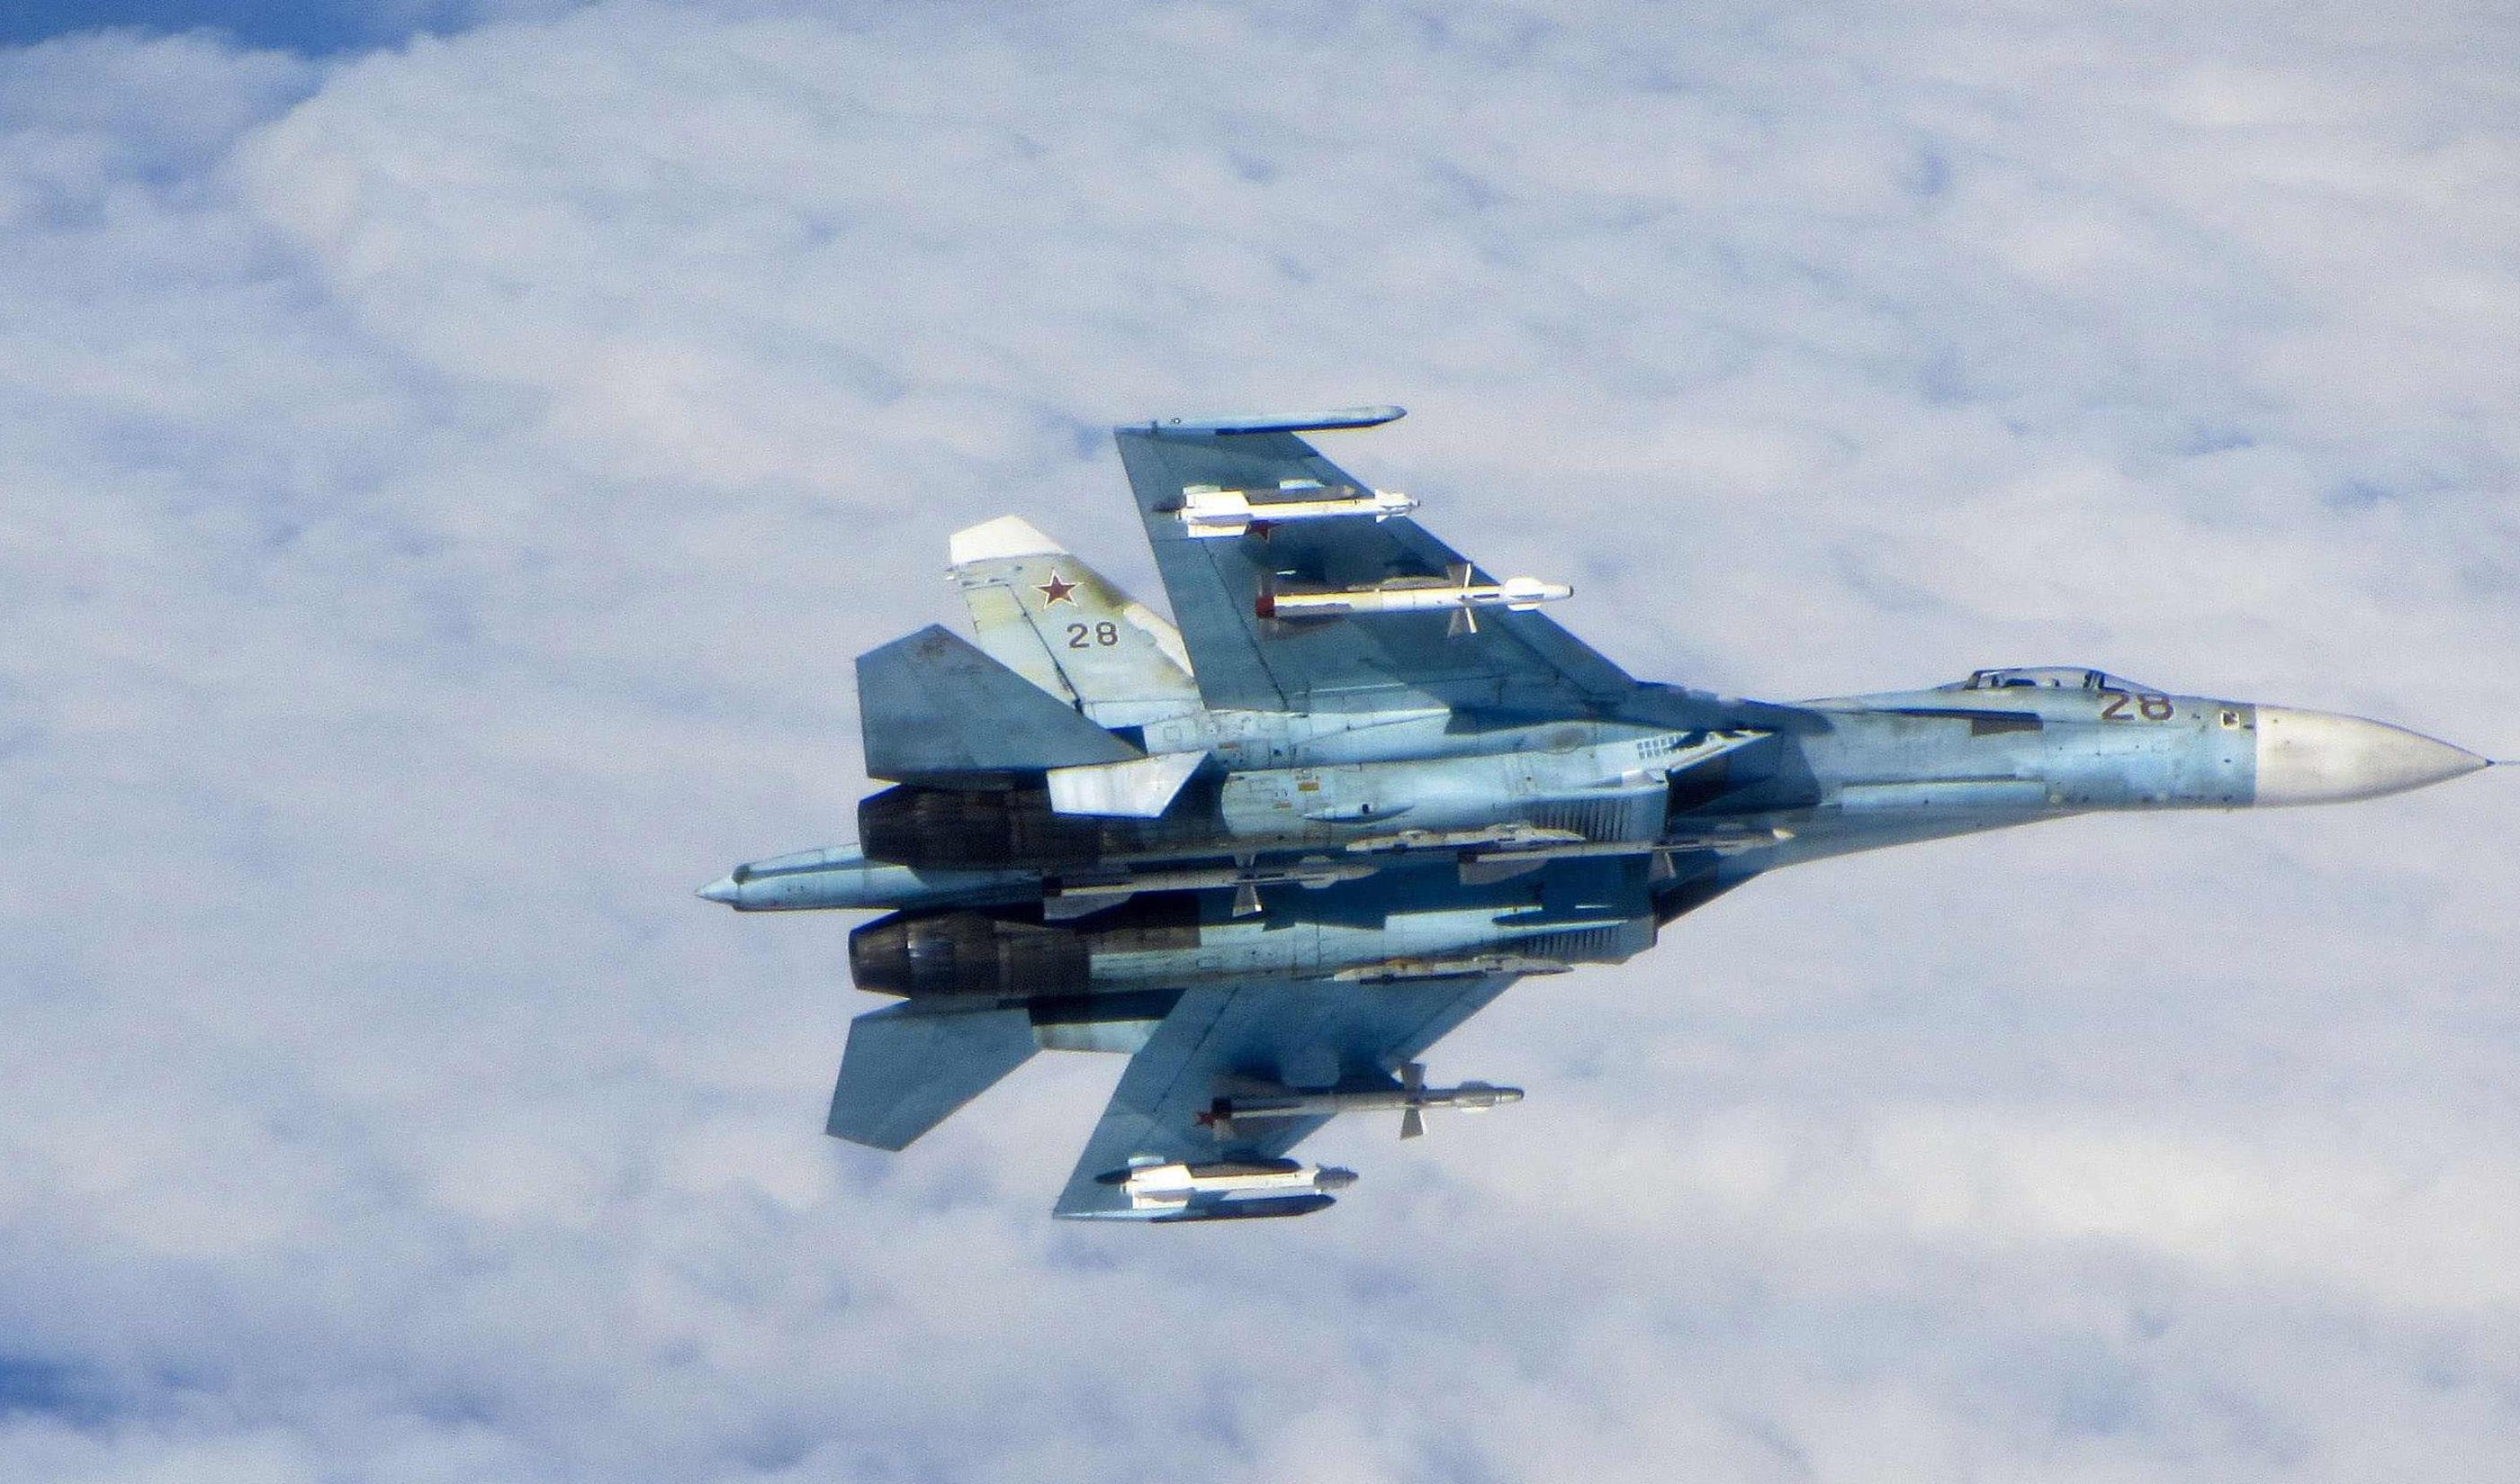 Ρωσία: Μαχητικό του ΝΑΤΟ προσέγγισε αεροσκάφος που μετέφερε υπουργό